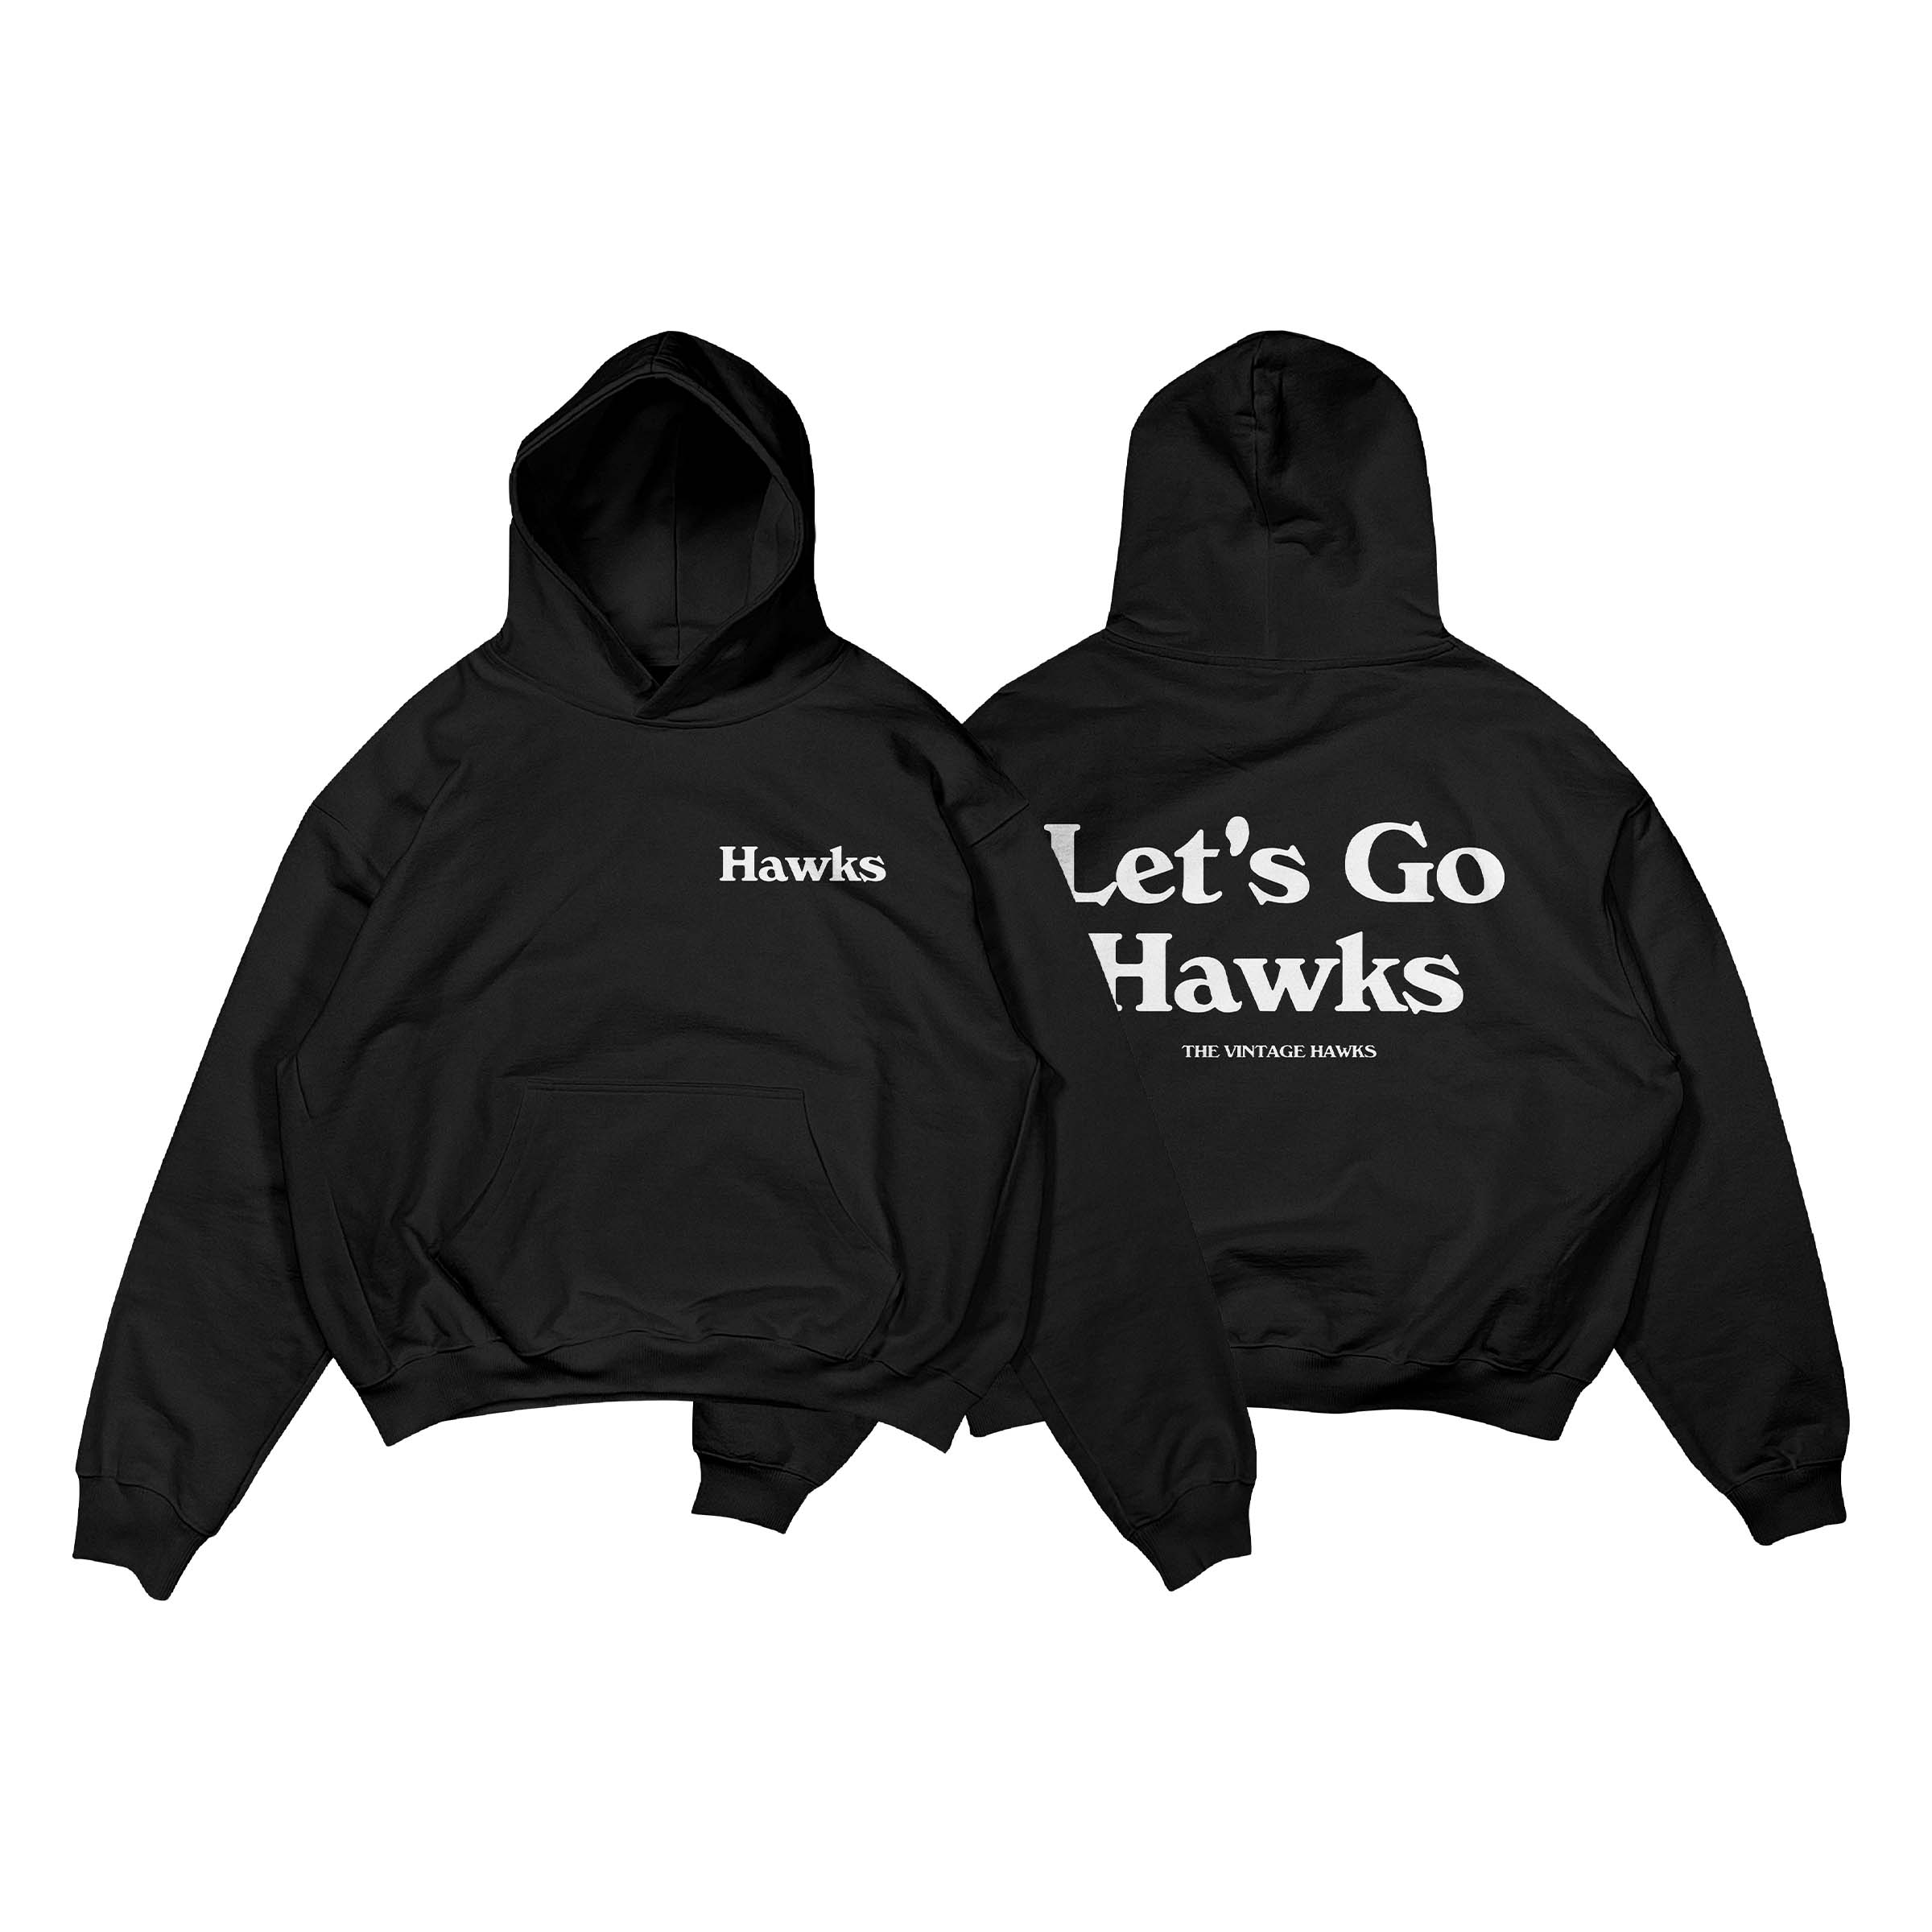 Let's Go Hawks Hoodie - Black